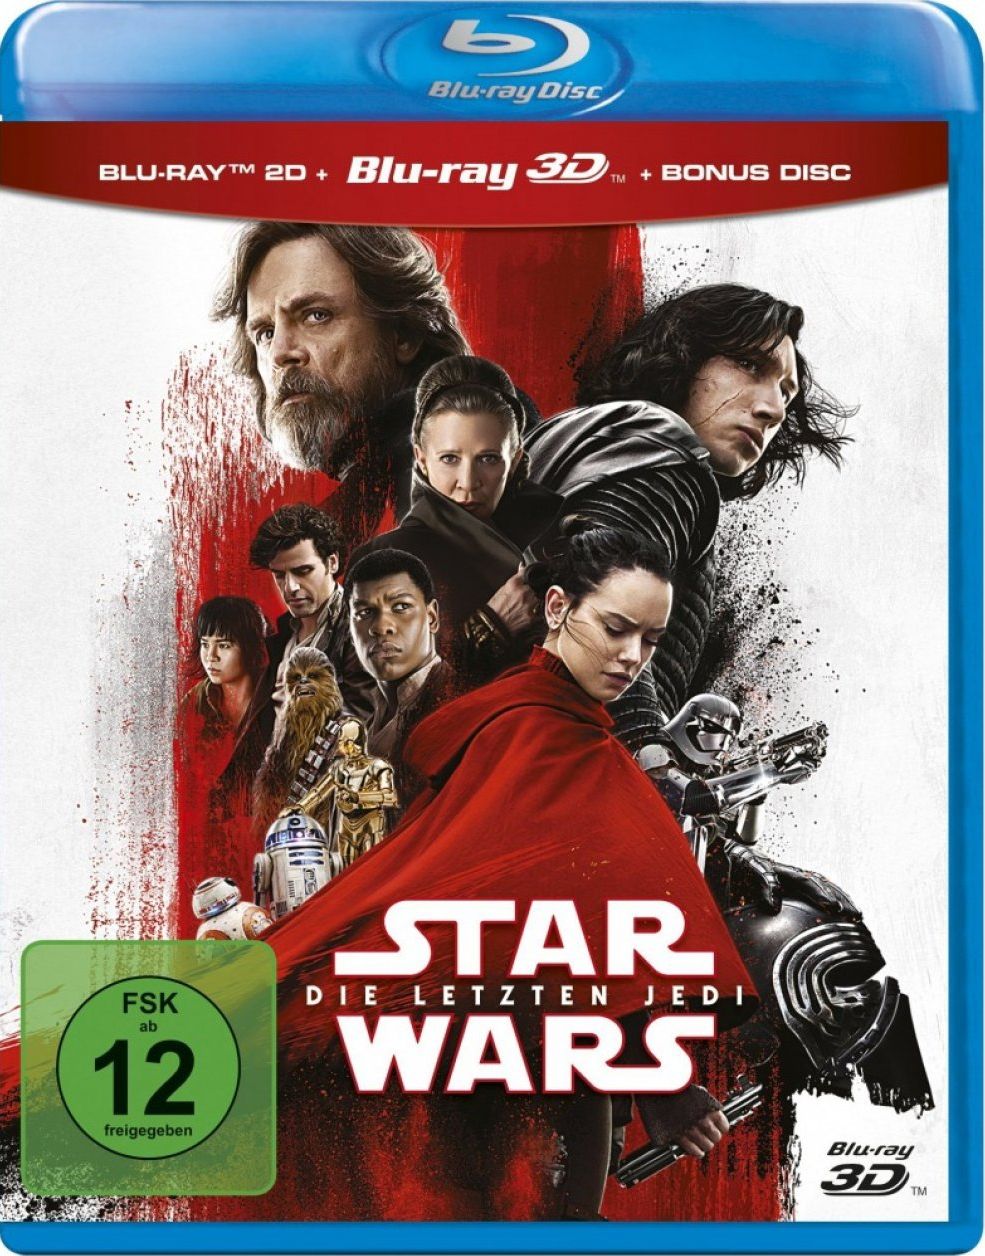 Star Wars Episode 8: Die letzten Jedi 3D (3 Discs) (BLURAY 3D + BLURAY)